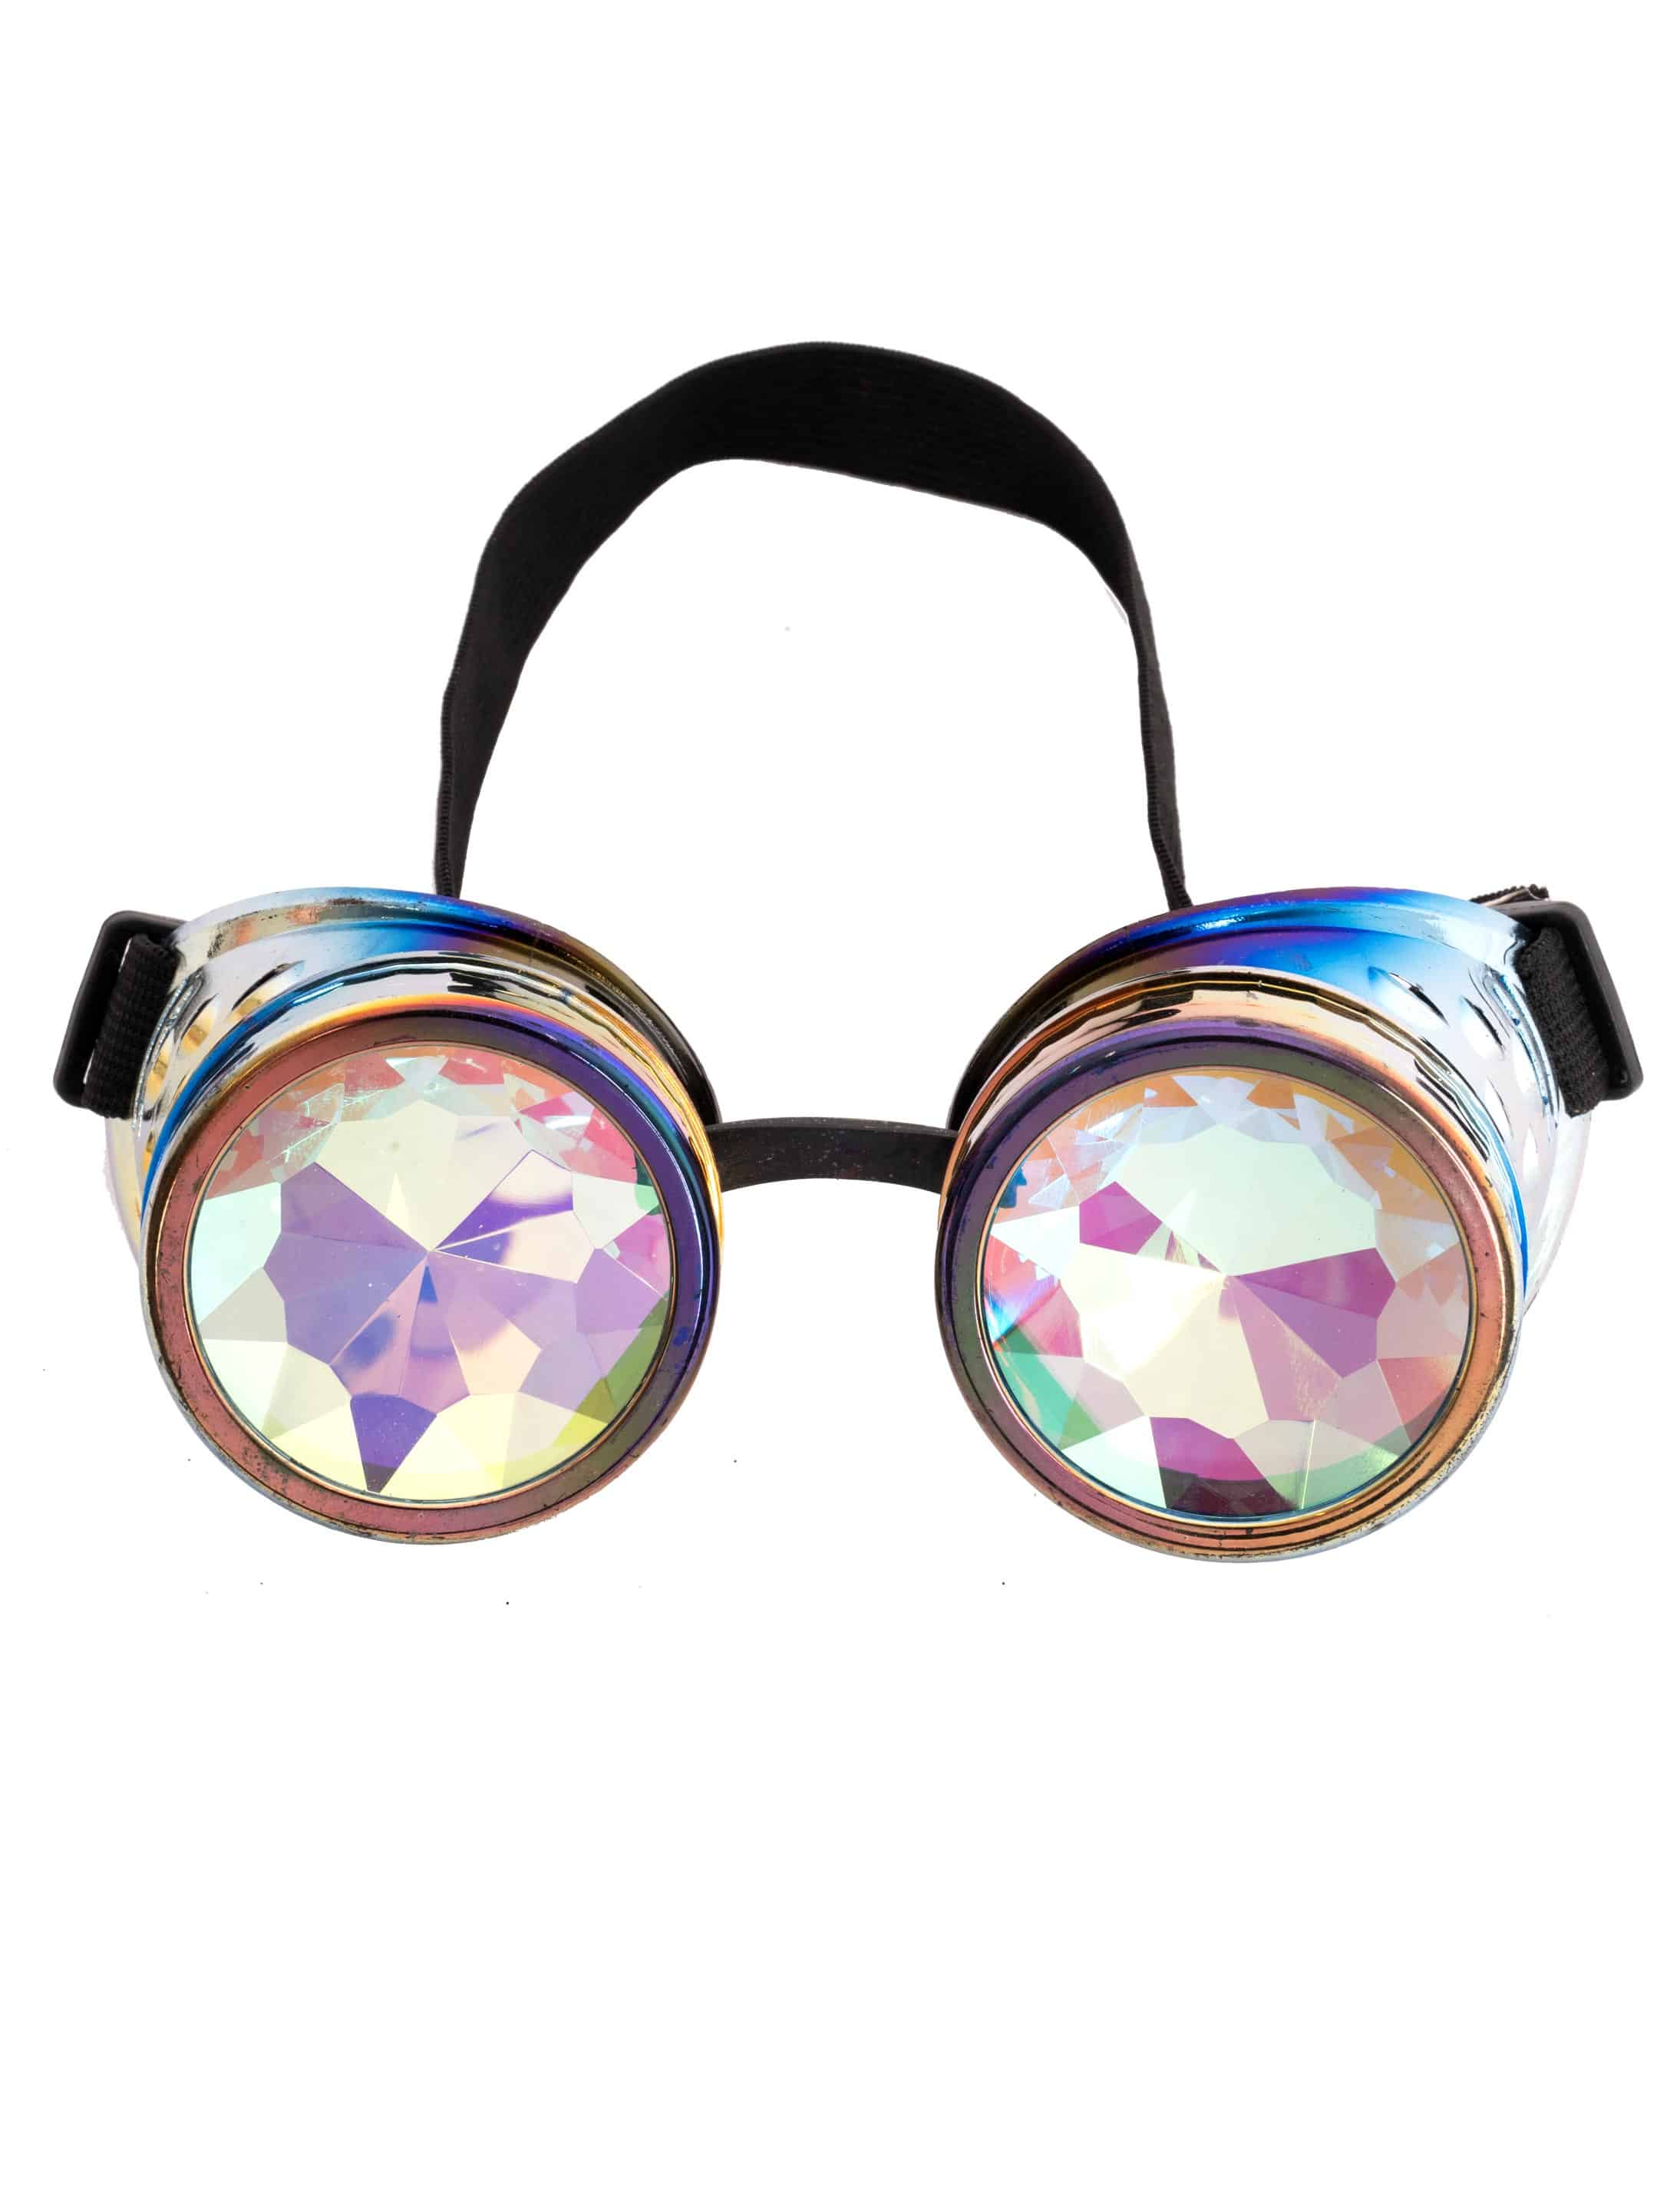 Brille Steampunk mit bunten Gläsern mehrfarbig